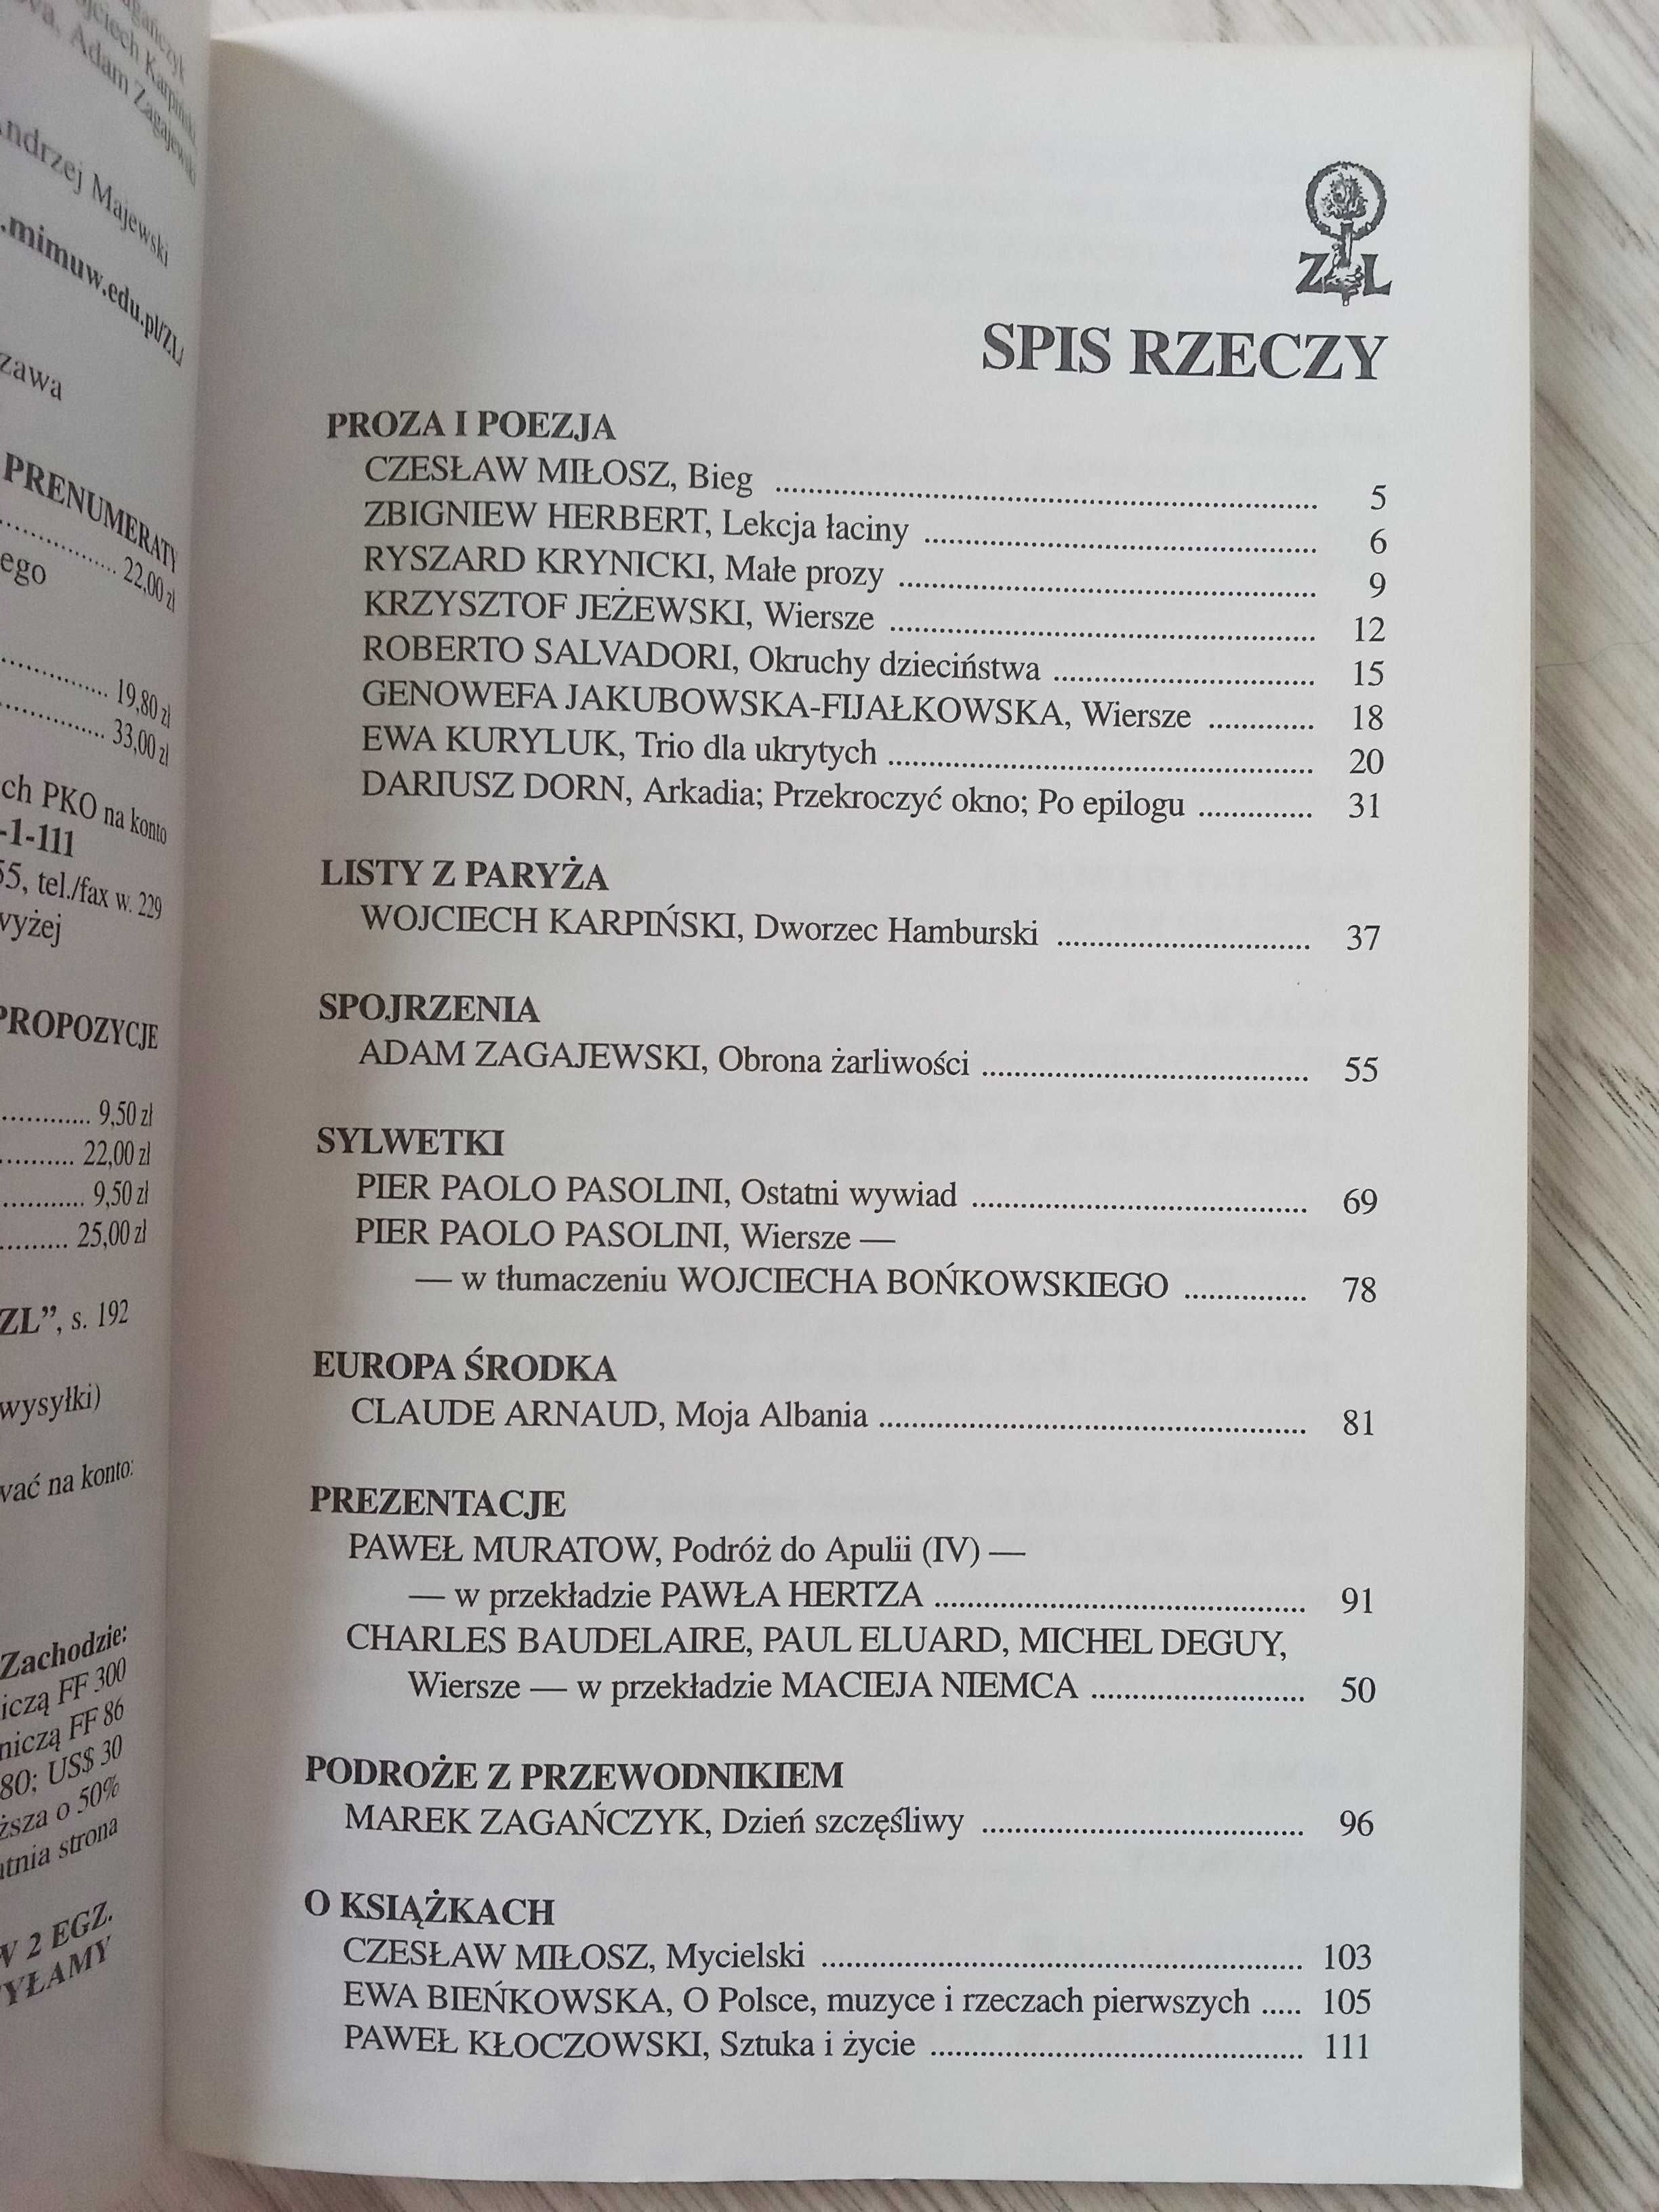 Zeszyty literackie nr 71  / Kultura / sztuka / poezja